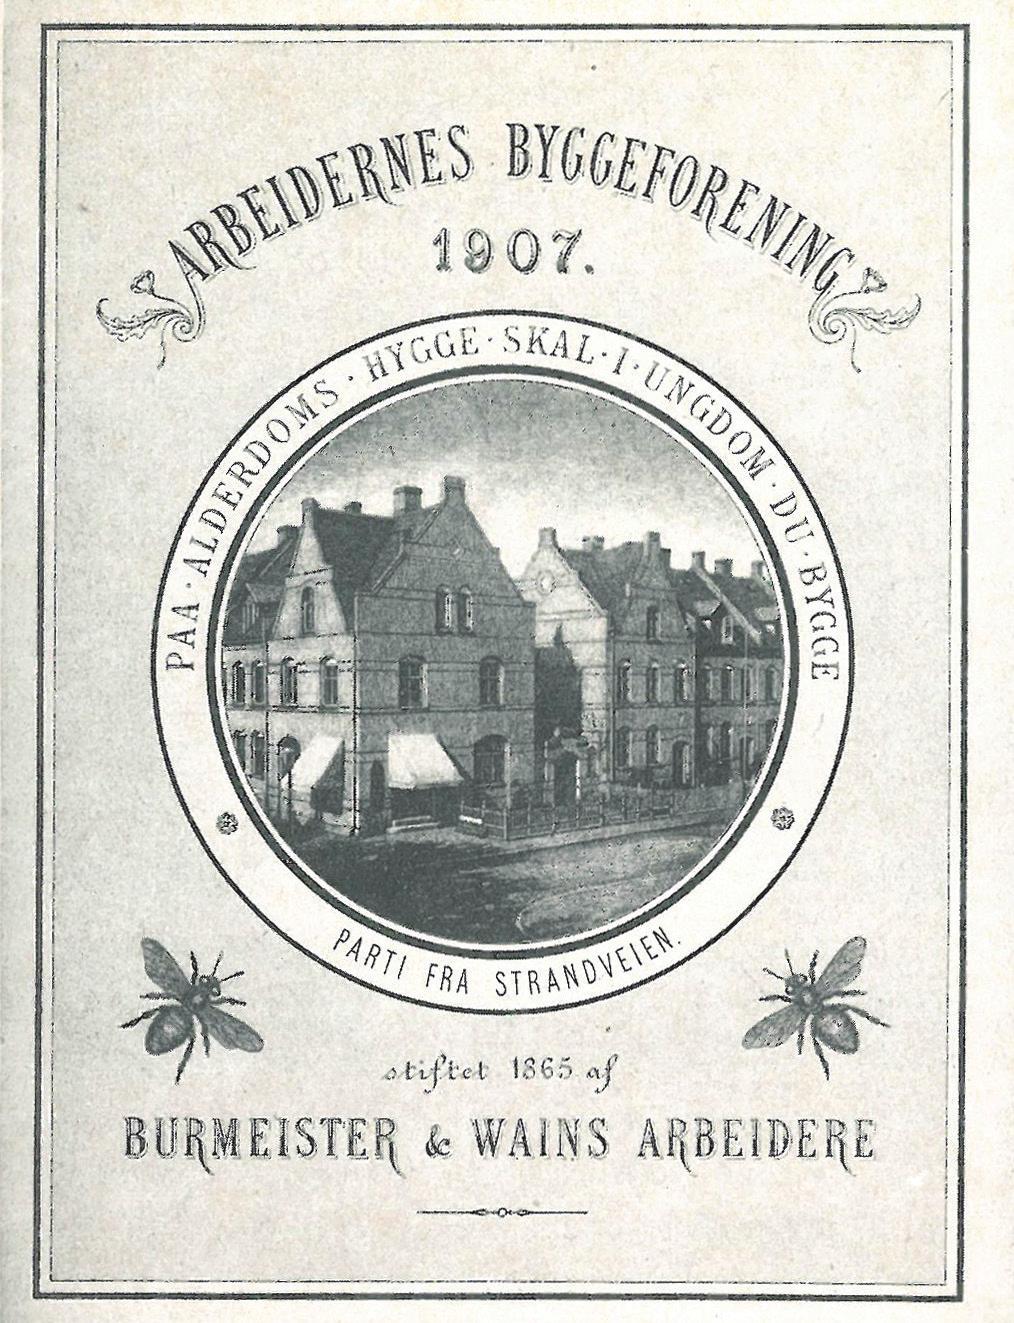 Kulturhistorie De 339 huse er opført af Arbejdernes Byggeforening, der var blevet oprettet af Burmeister og Wains arbejdere i 1865 på opfordring af lægen Frederik Ferdinand Ulrik.